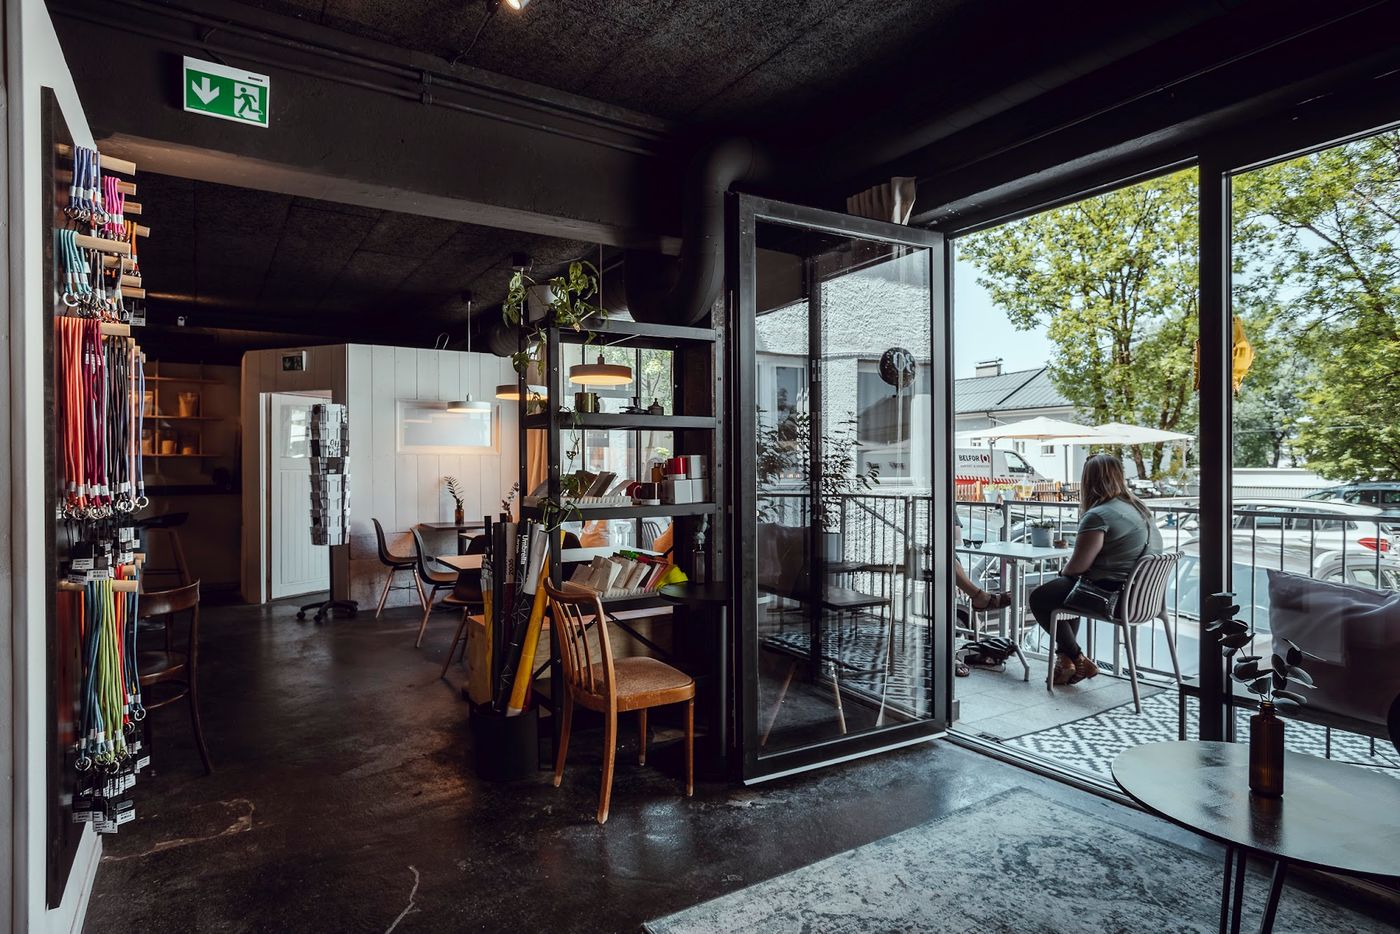 Café trifft Concept Store